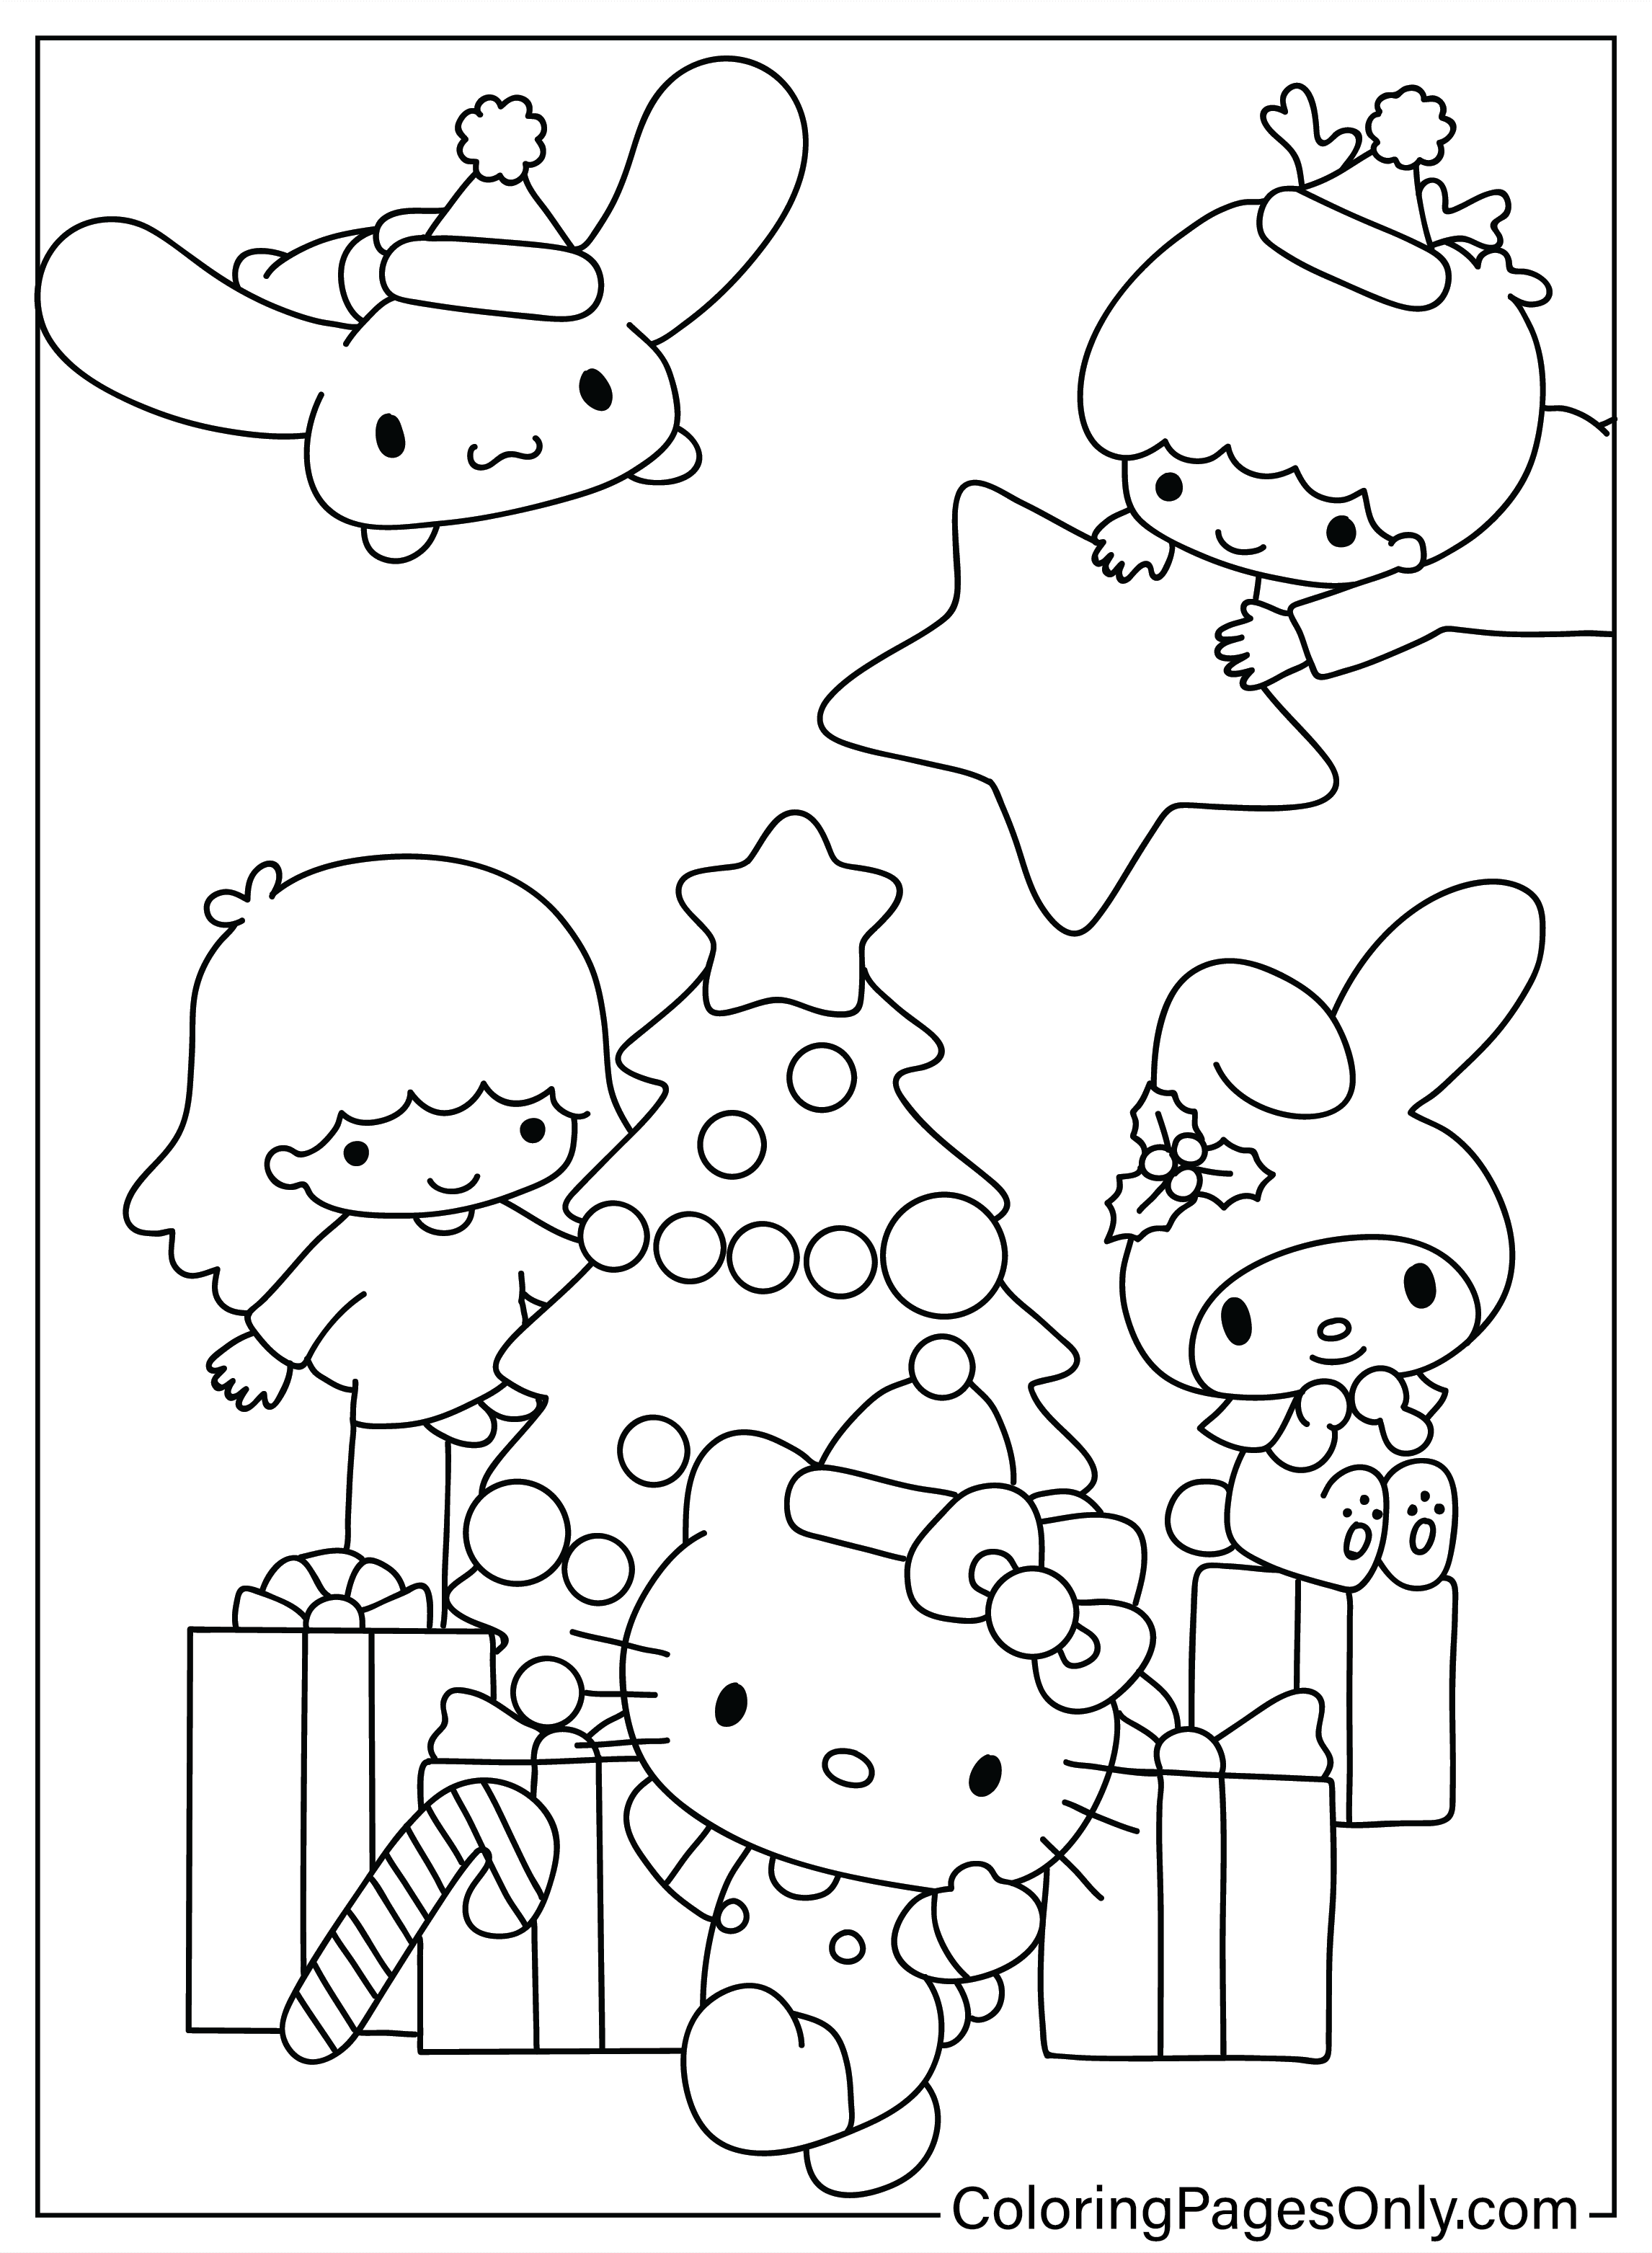 Página para colorear de Hello Kitty de Navidad de dibujos animados de Navidad